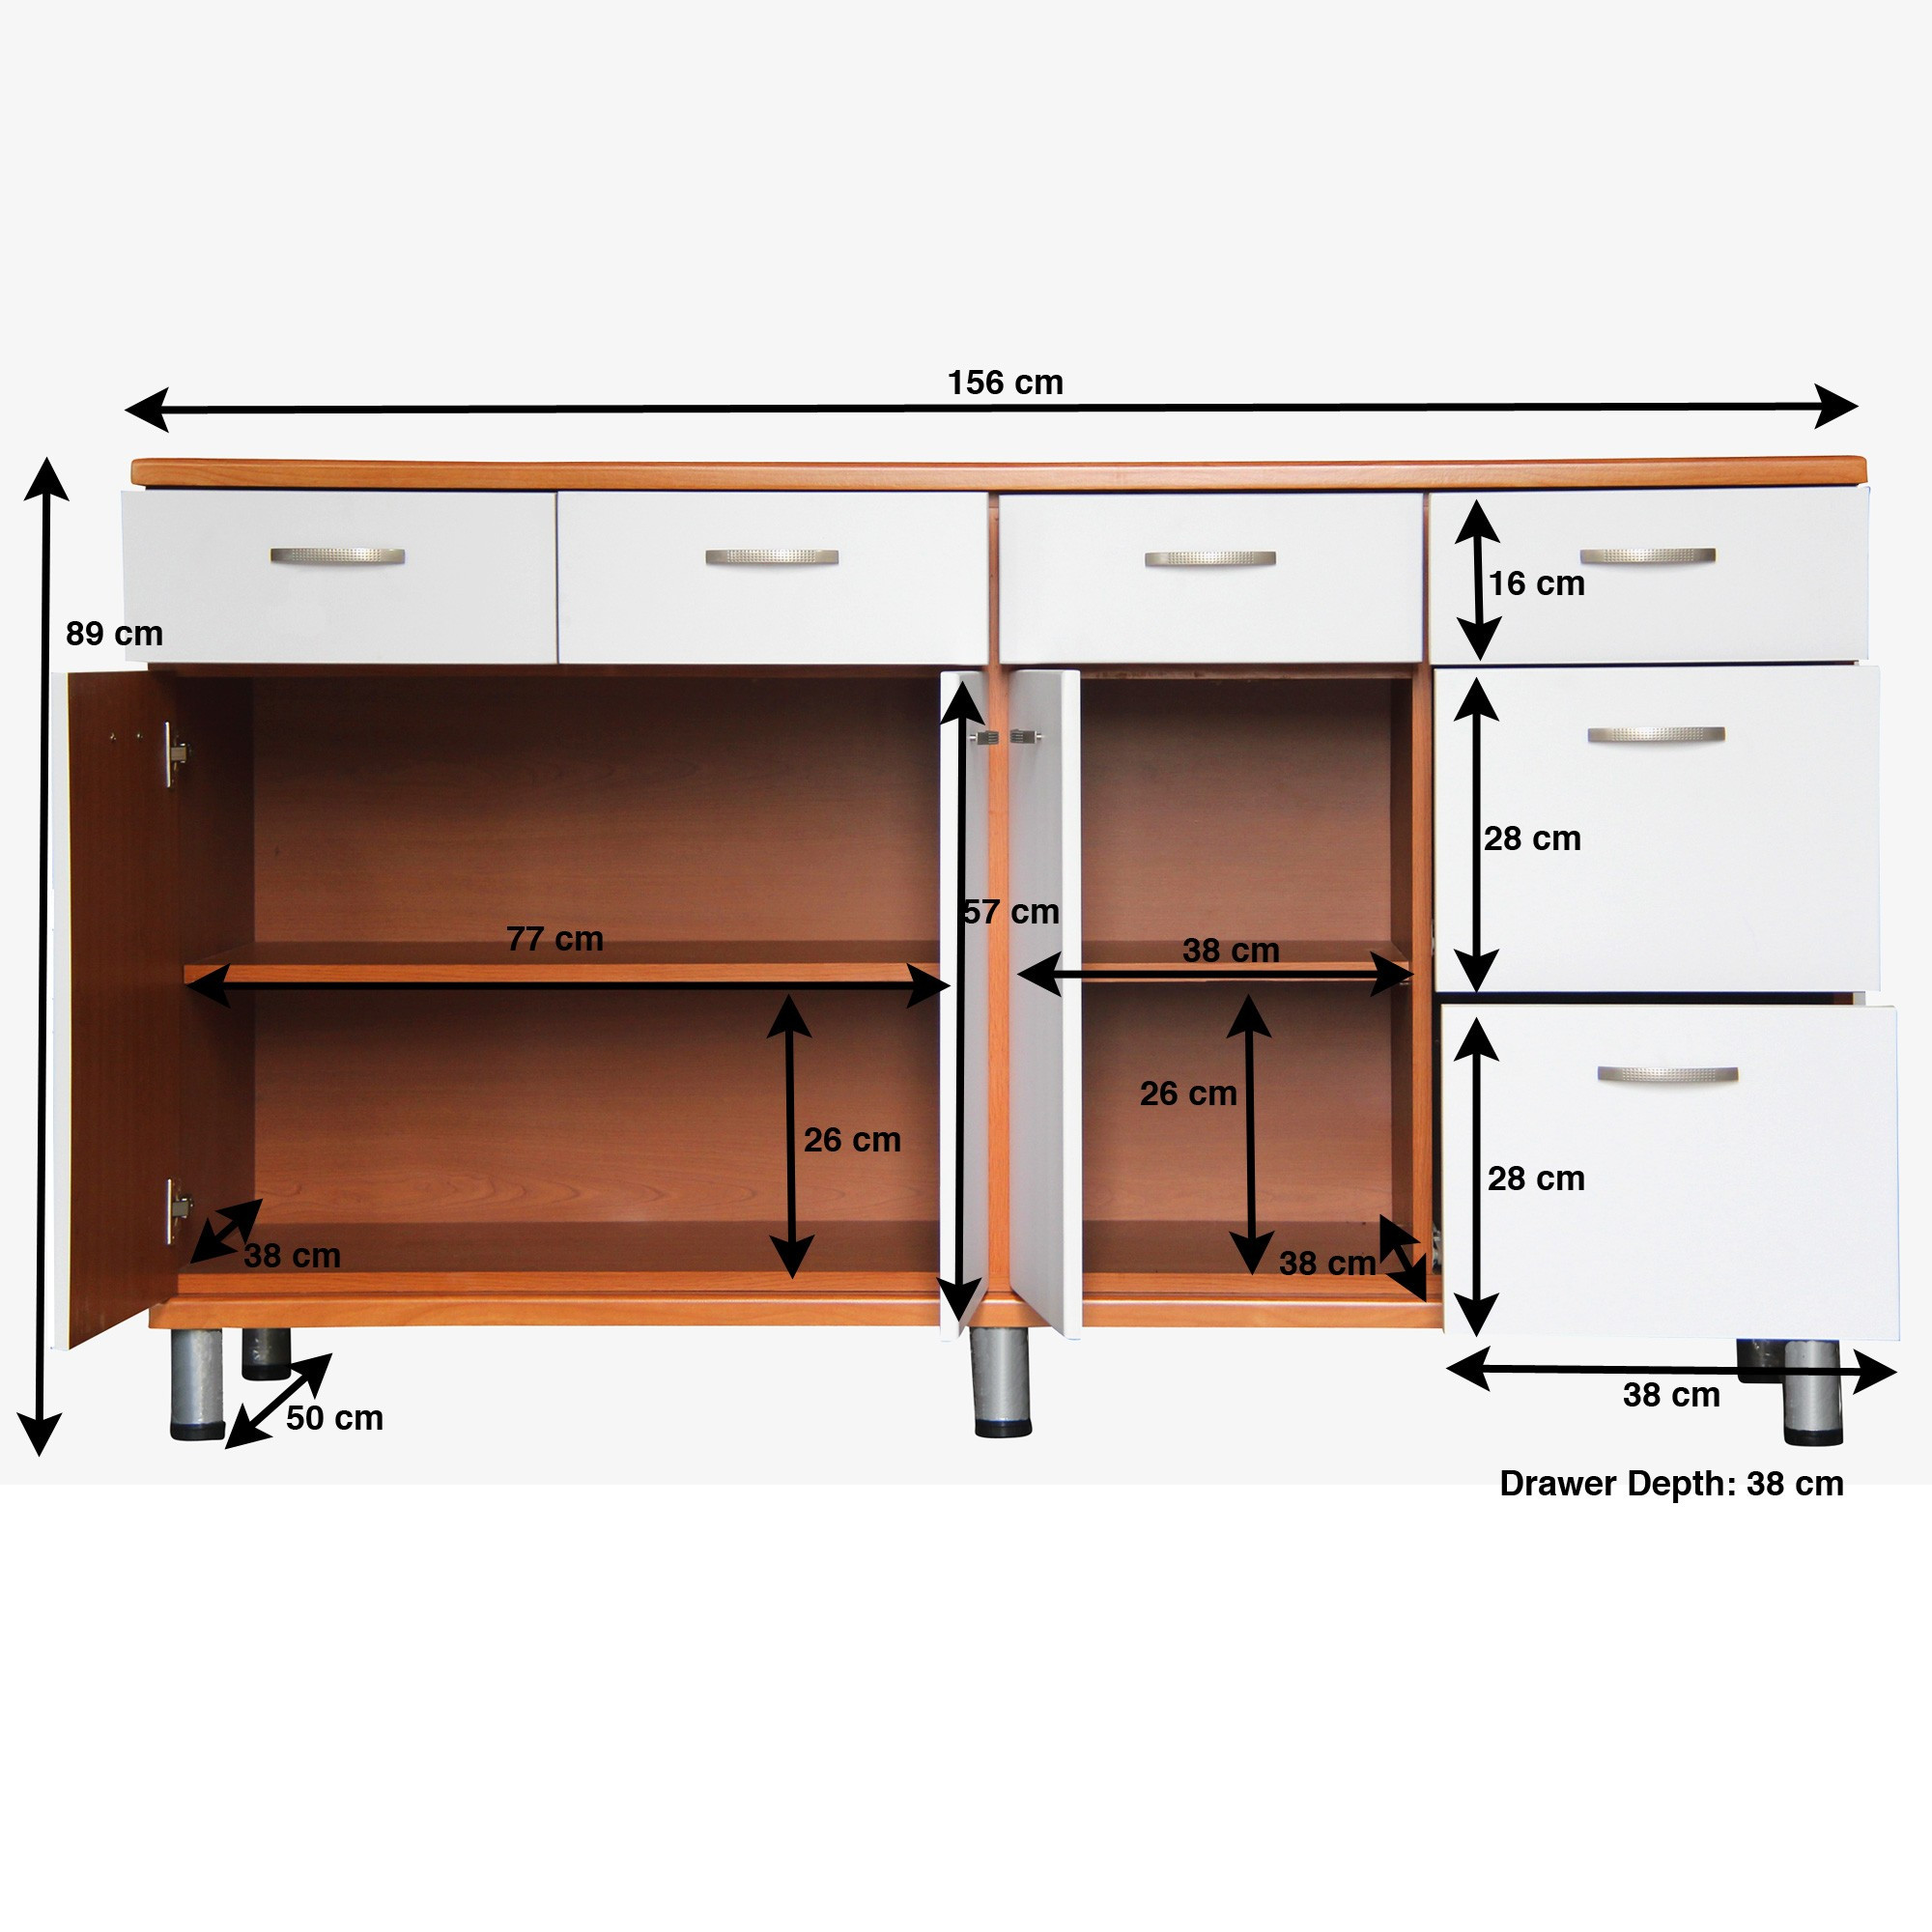 Best ideas about Kitchen Cabinet Depth
. Save or Pin Standard Kitchen Drawer Depth Kitchen Design Ideas Now.